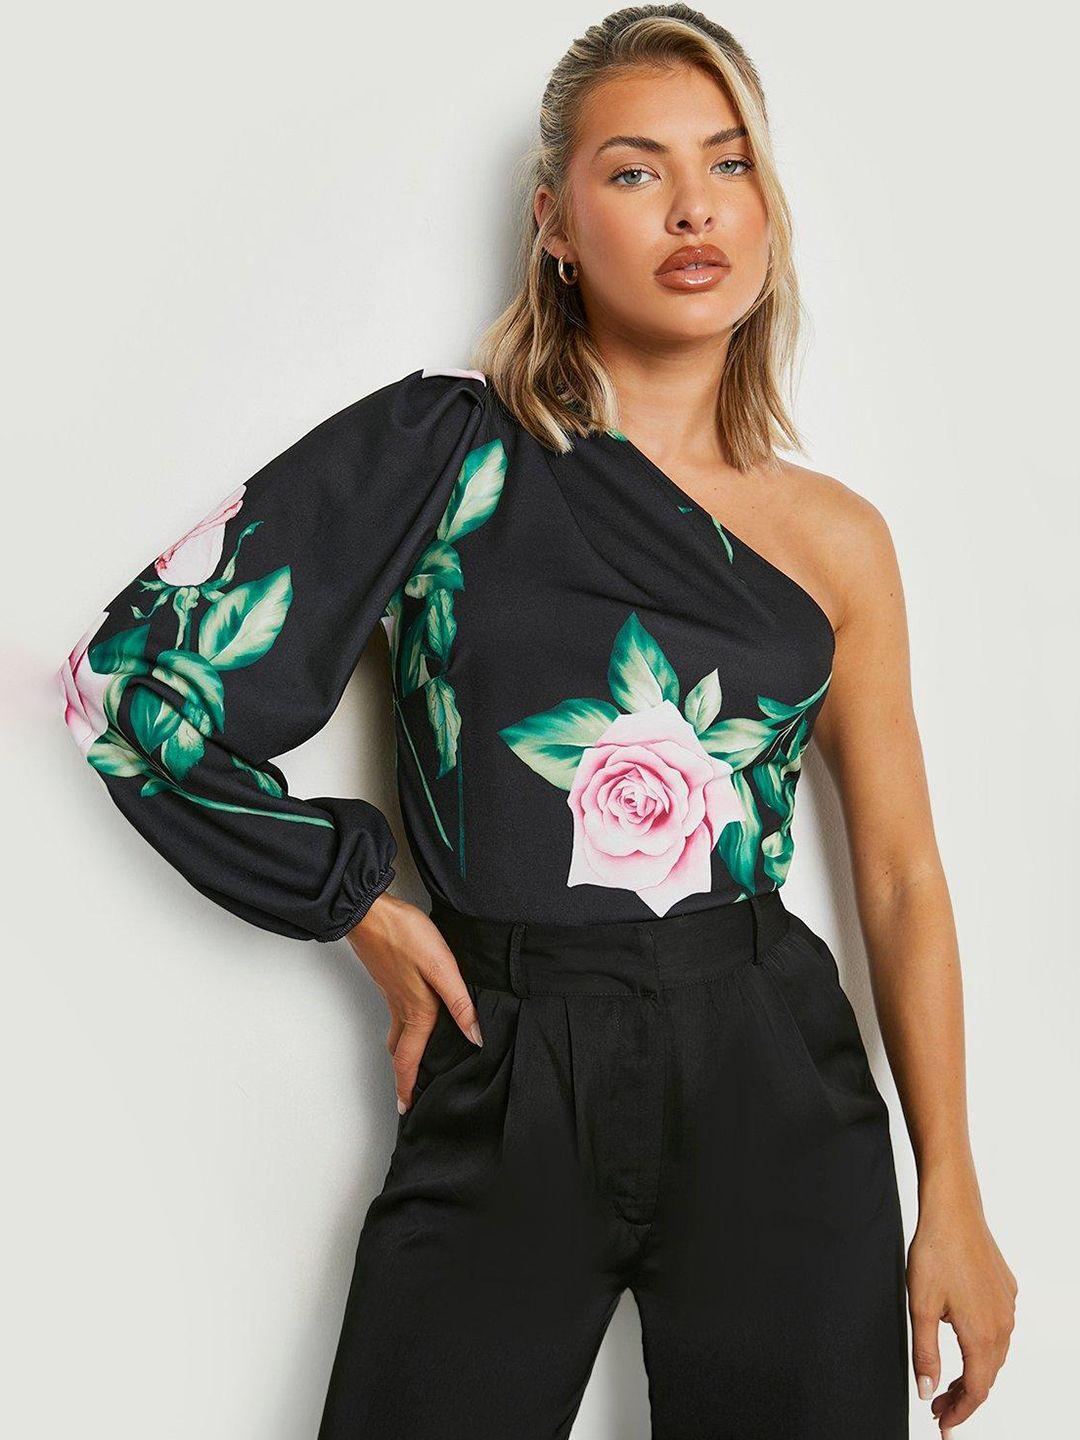 boohoo women black & pink floral printed bodysuit